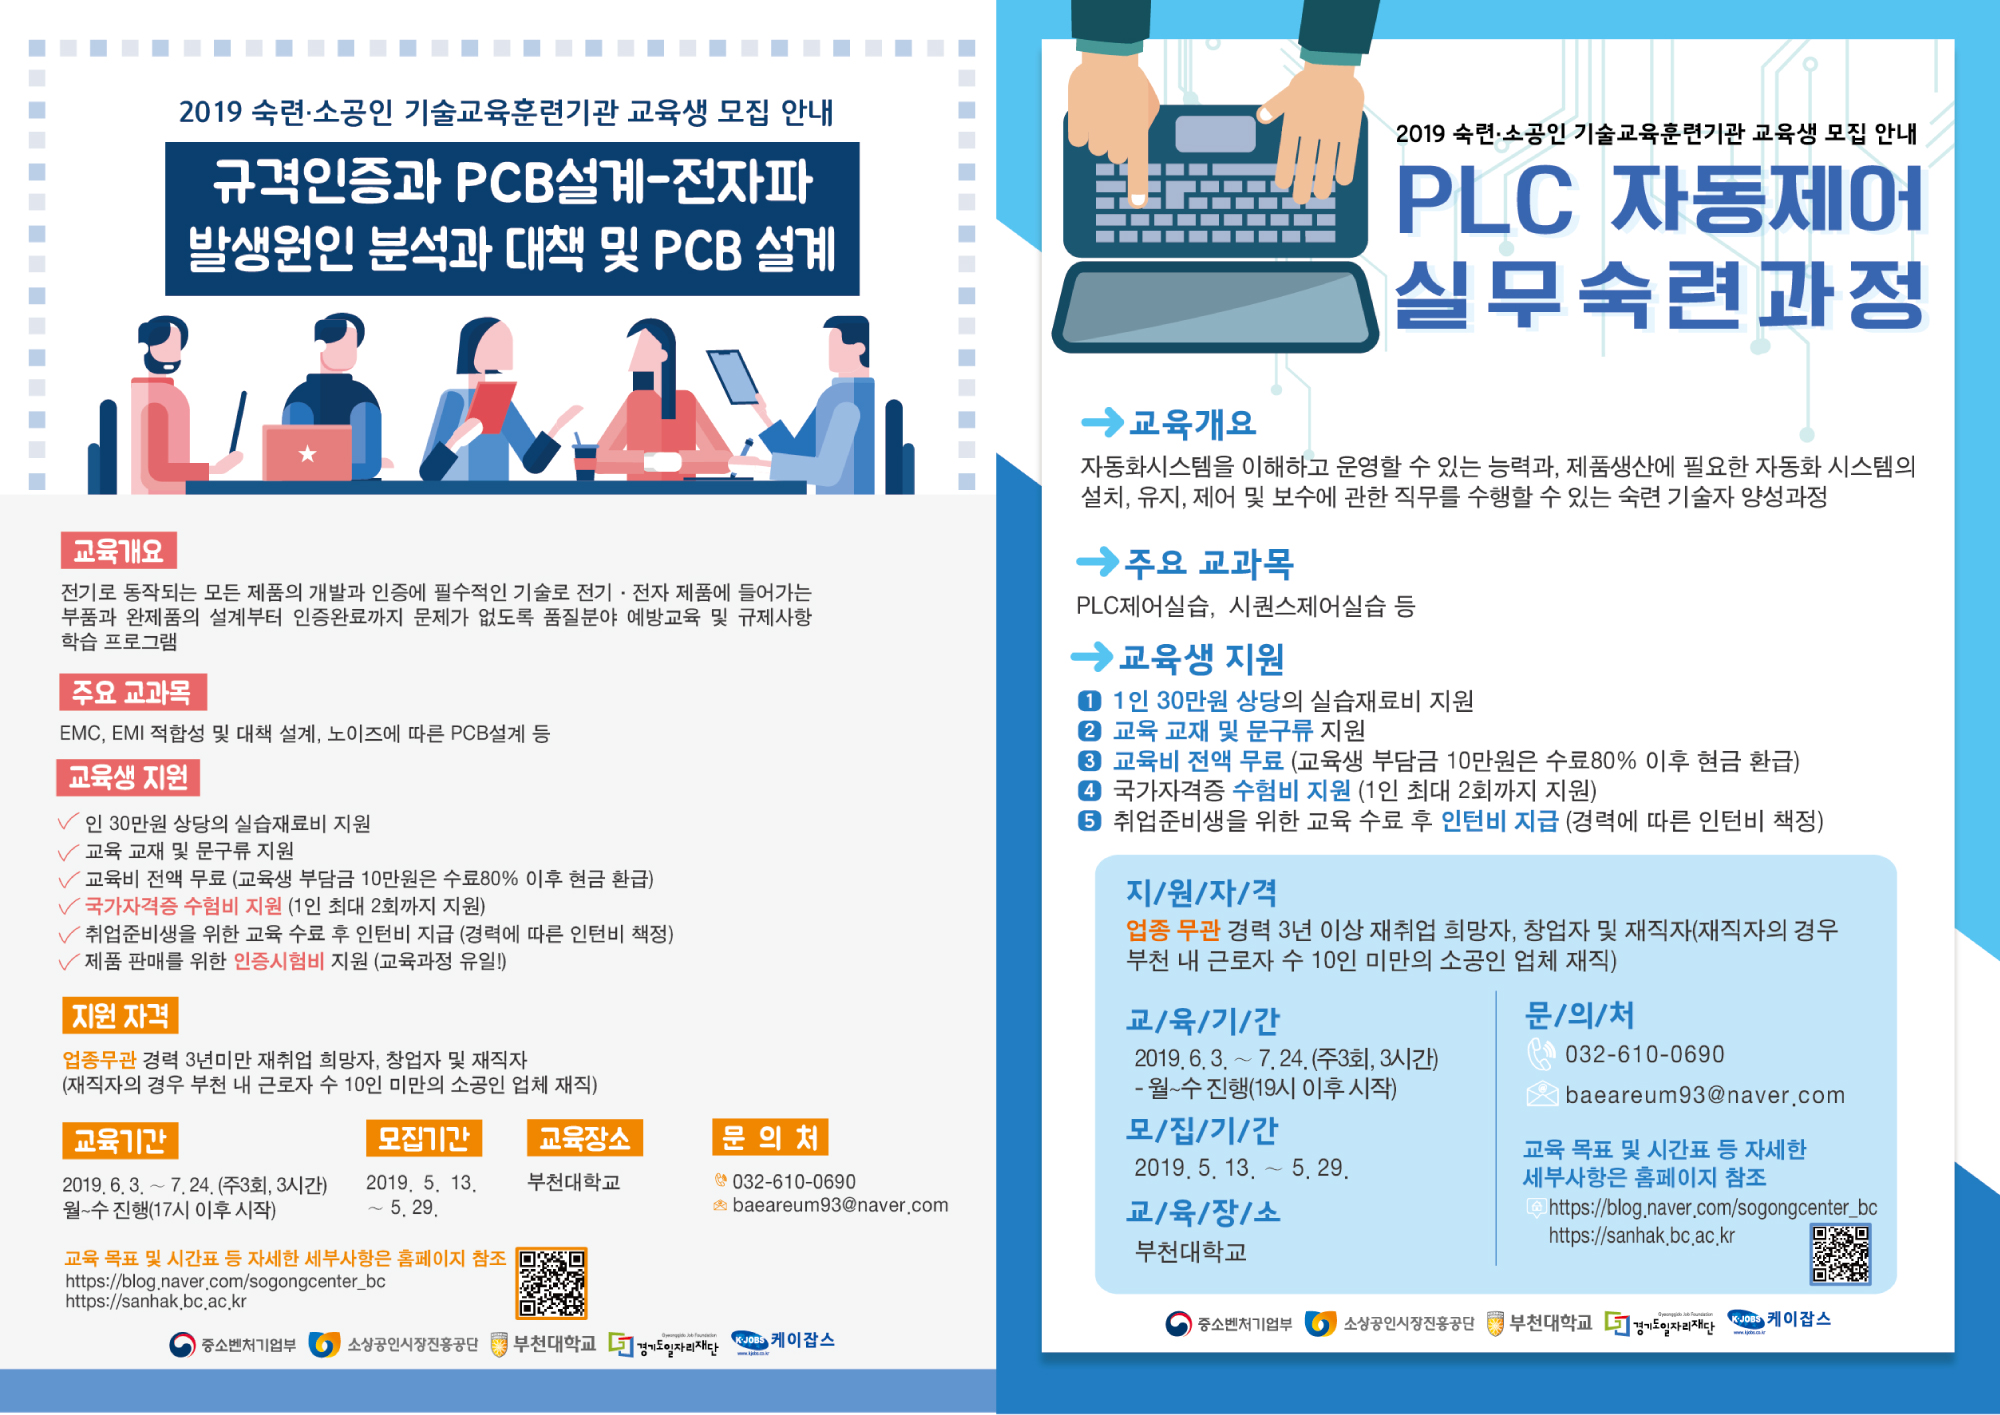 부천대학교 ‘2019 소공인 기술교육훈련기관 운영사업’ 선정 및 교육생 모집